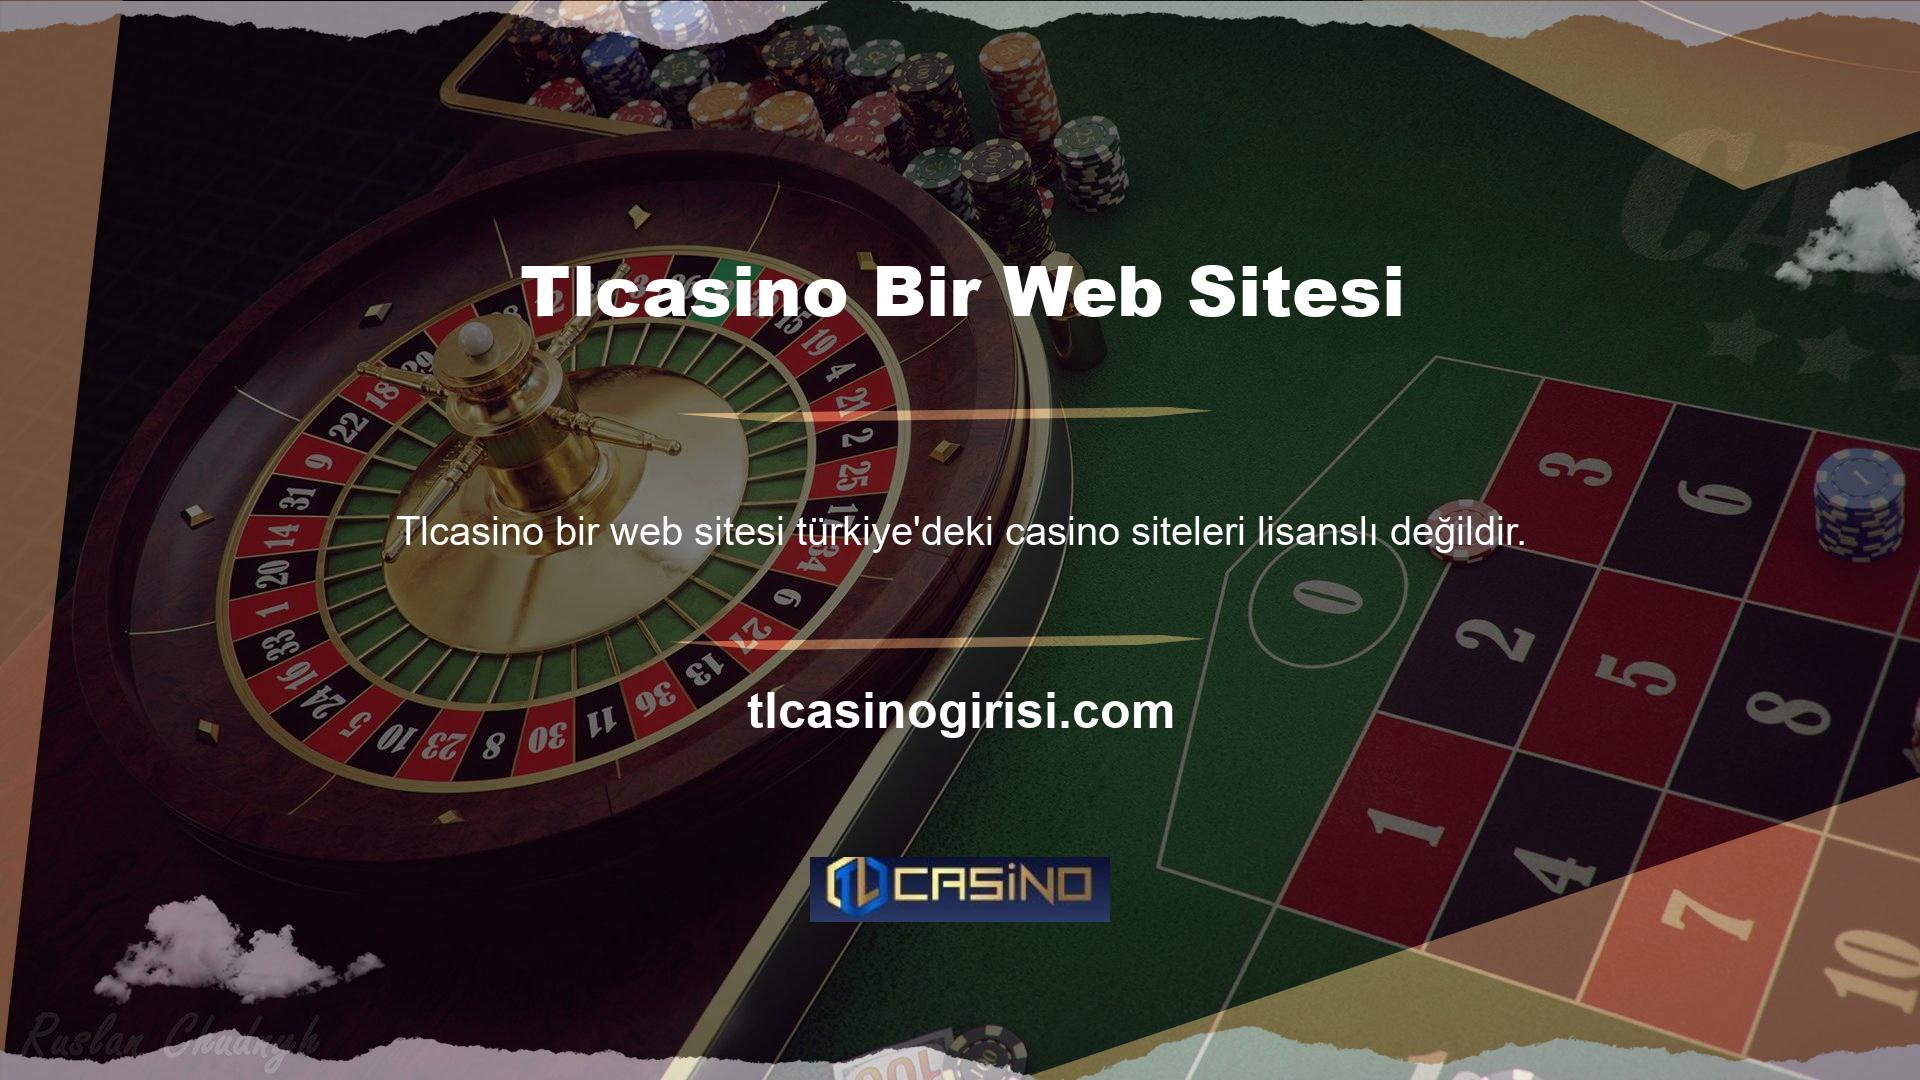 Çoğu Türk müşteri sitede oyun oynuyor